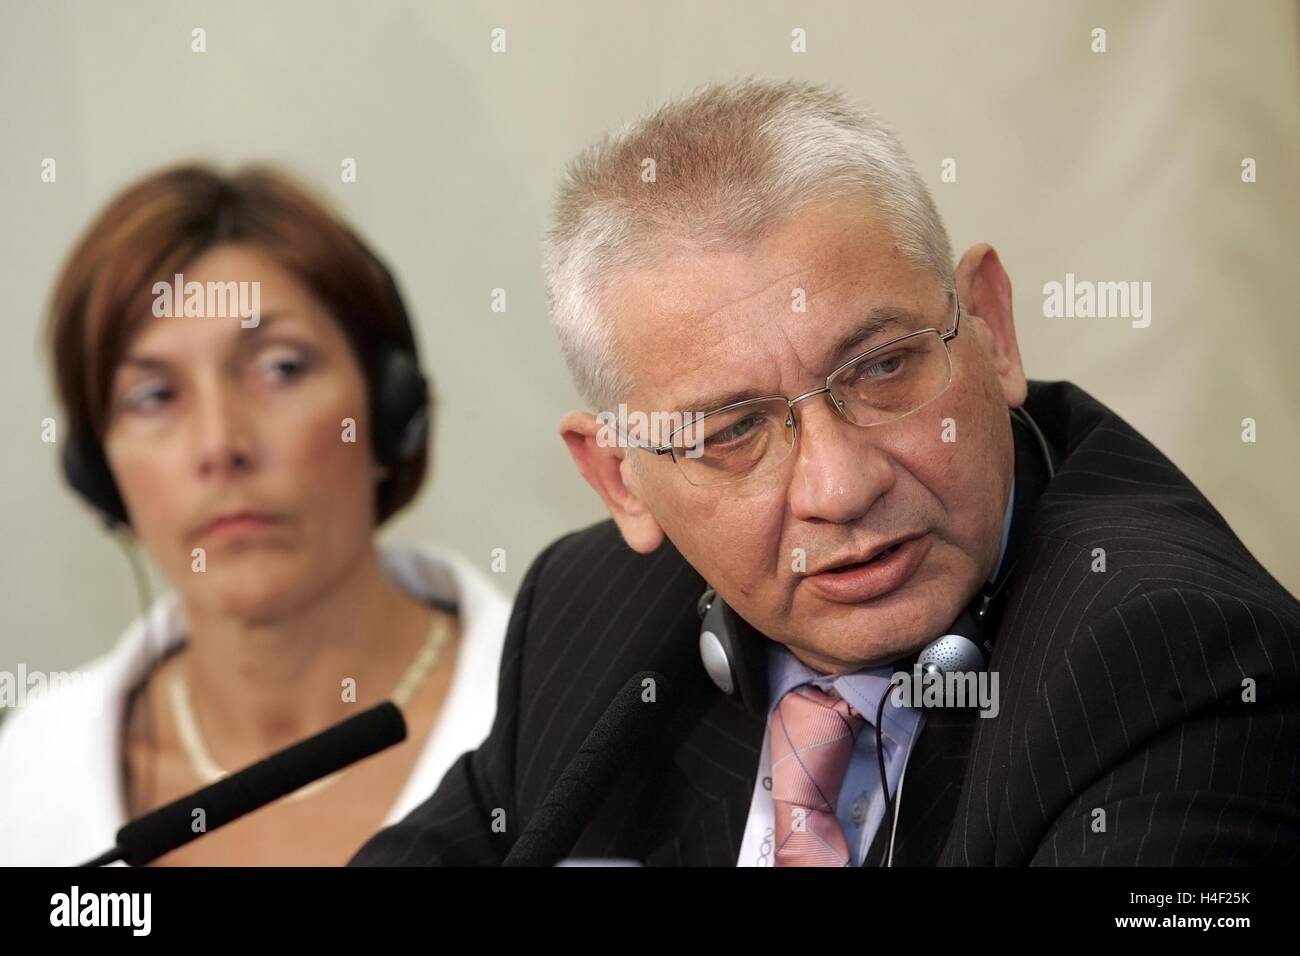 L) Dawn Primarolo manodopera, MP e Ludwik DORN di Polonia, polacco politico conservatore, Foto Stock